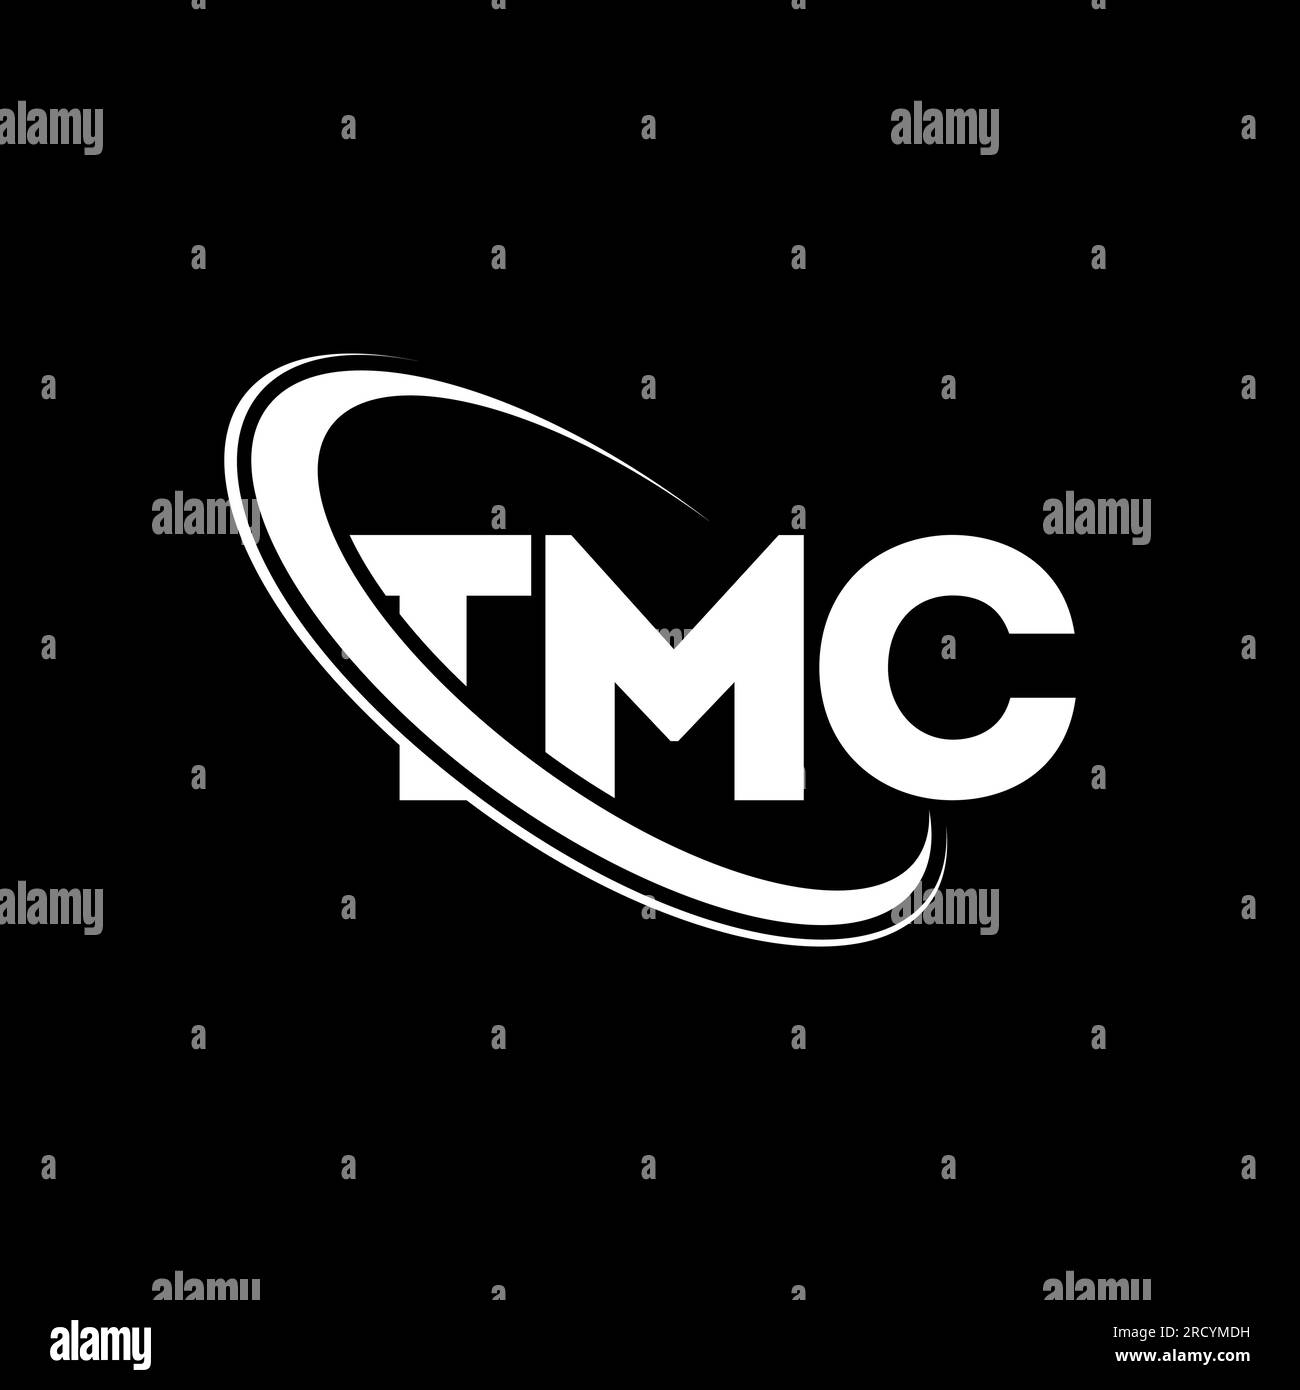 Tmc Logo Stock Photos and Images - 123RF